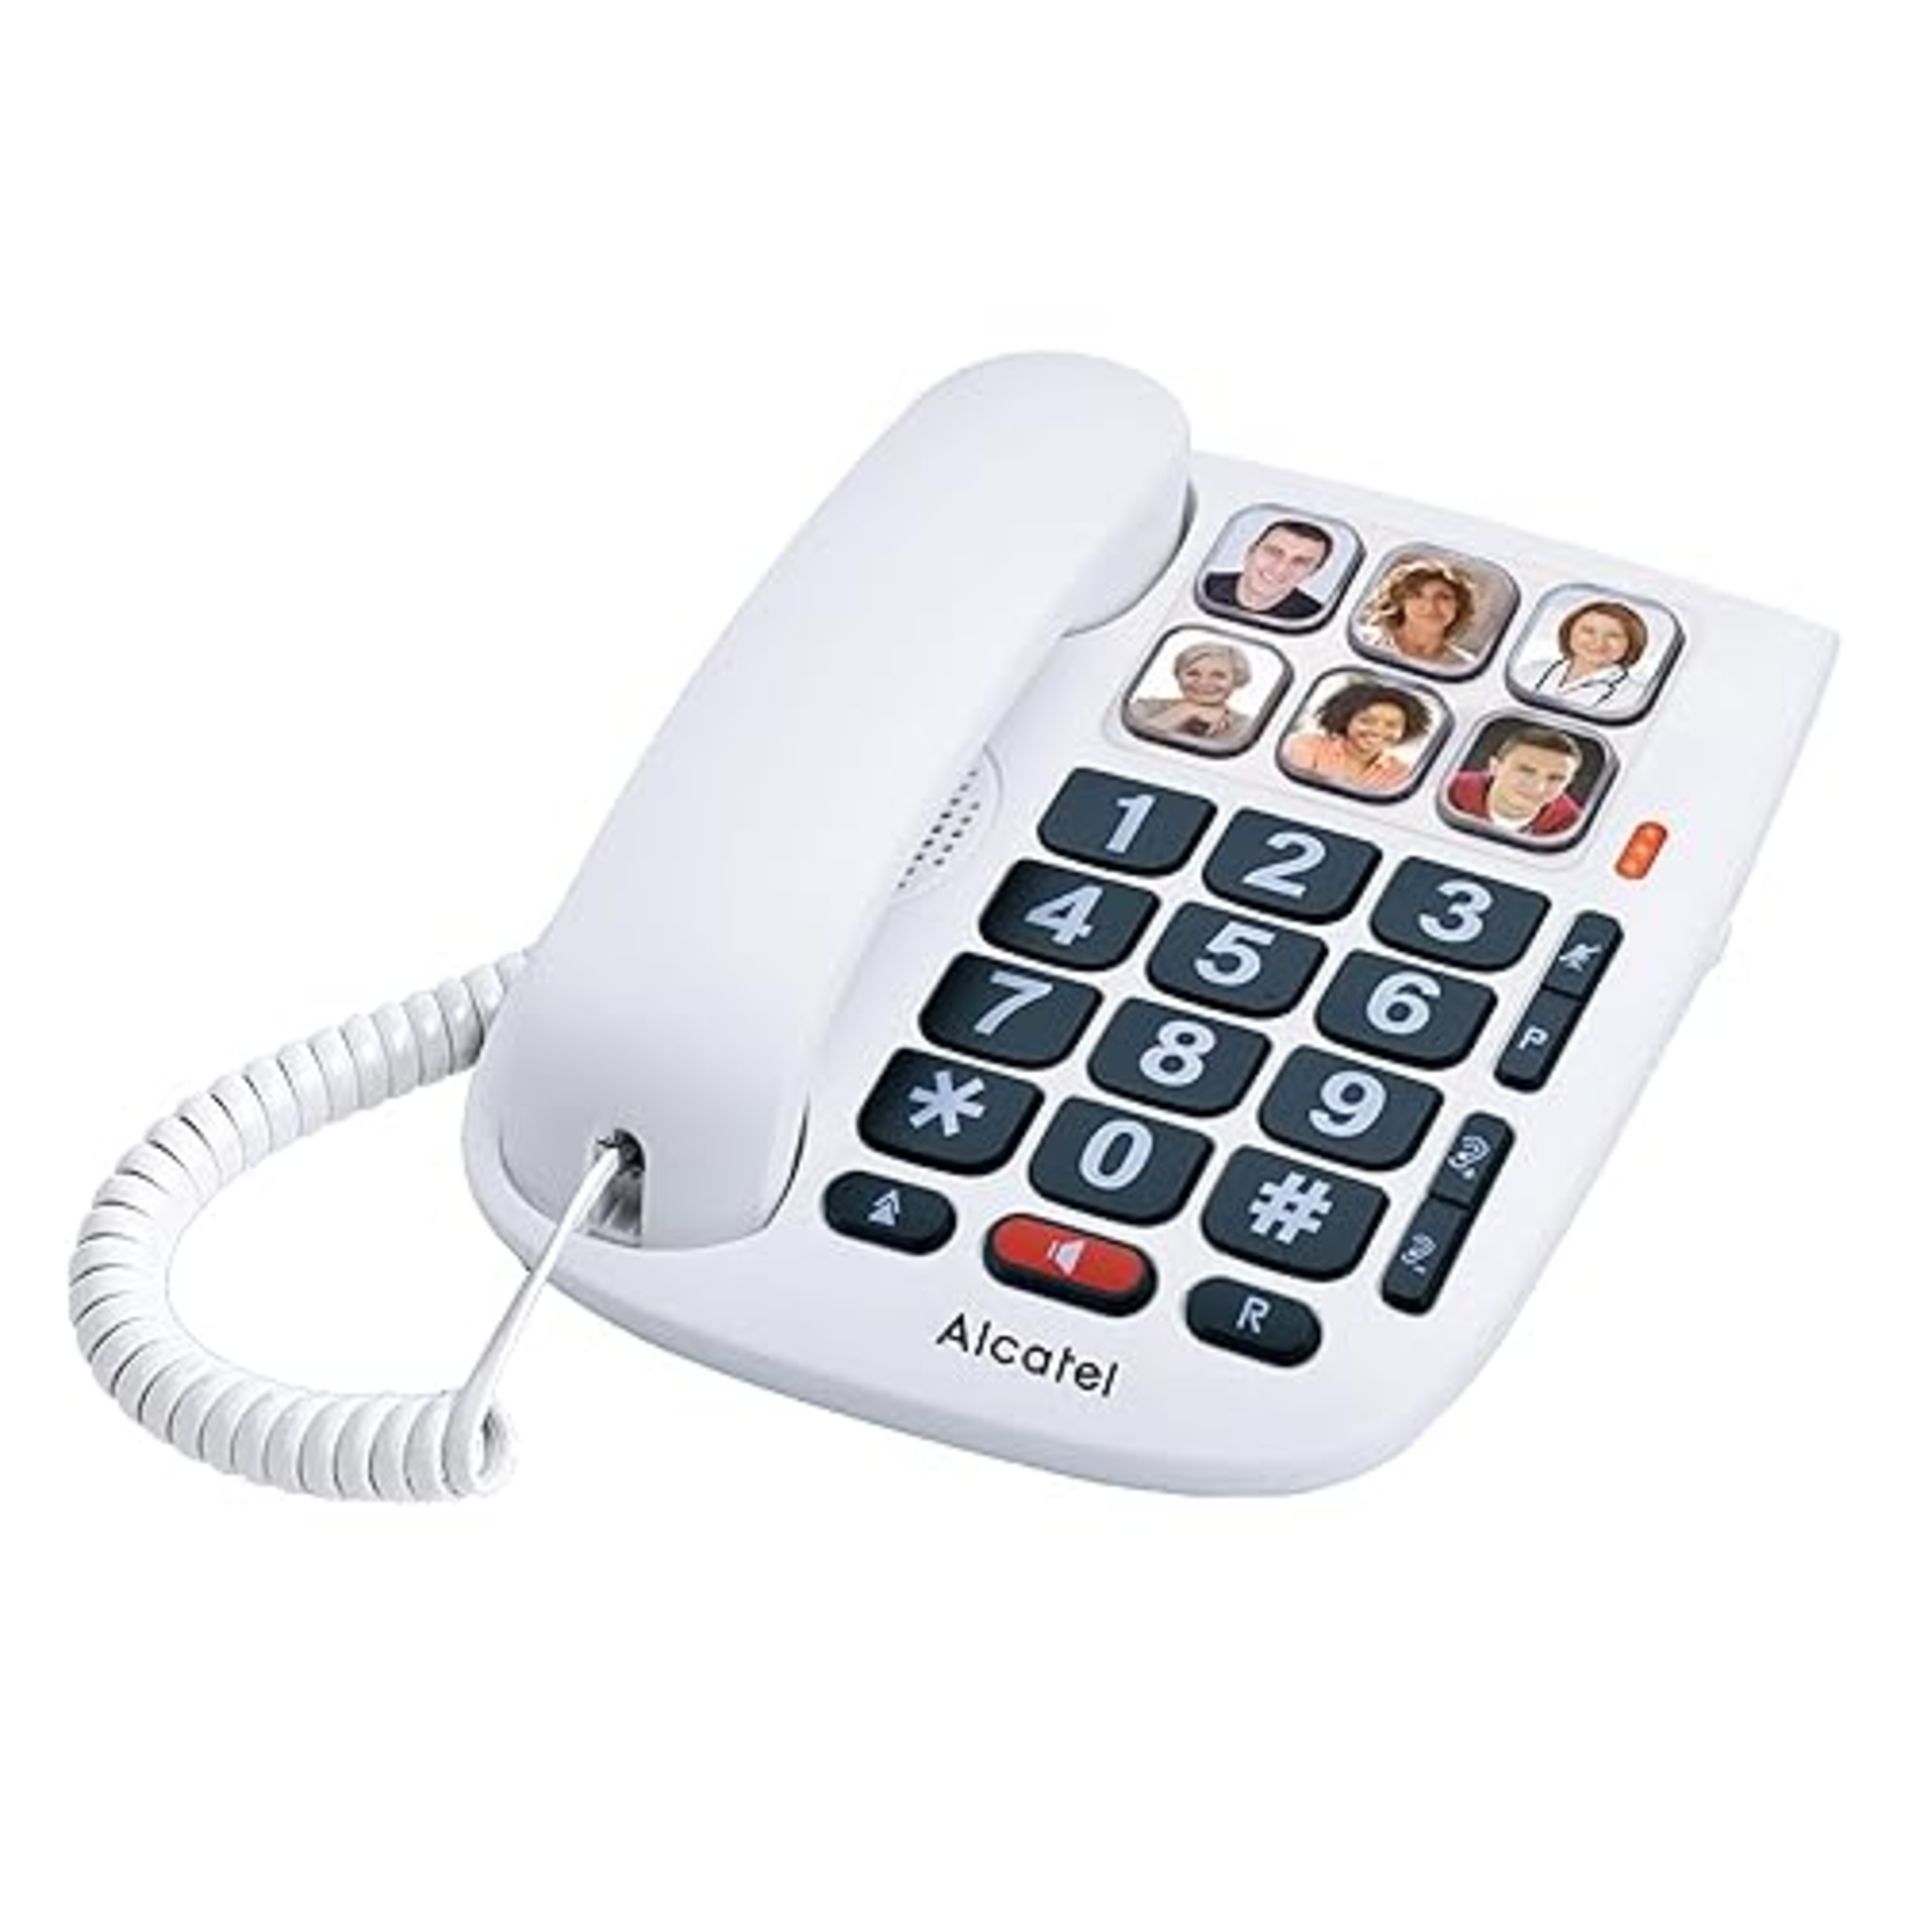 Alcatel Max 10 - Telefono cablato per anziani, colore: bianco